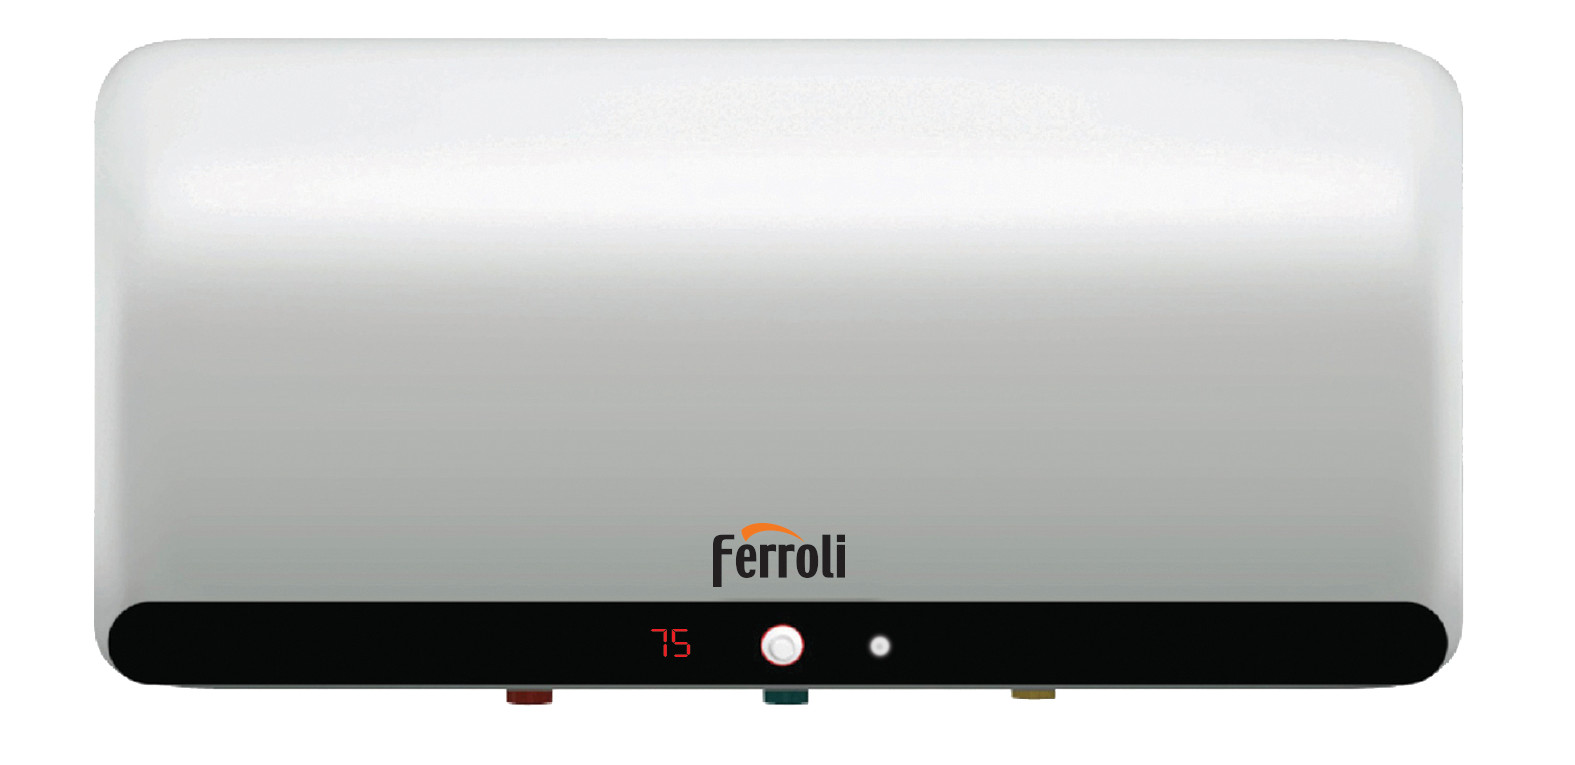 Bình nước nóng Ferroli Rapido HD có thiết kế sang trọng và hiện đại.